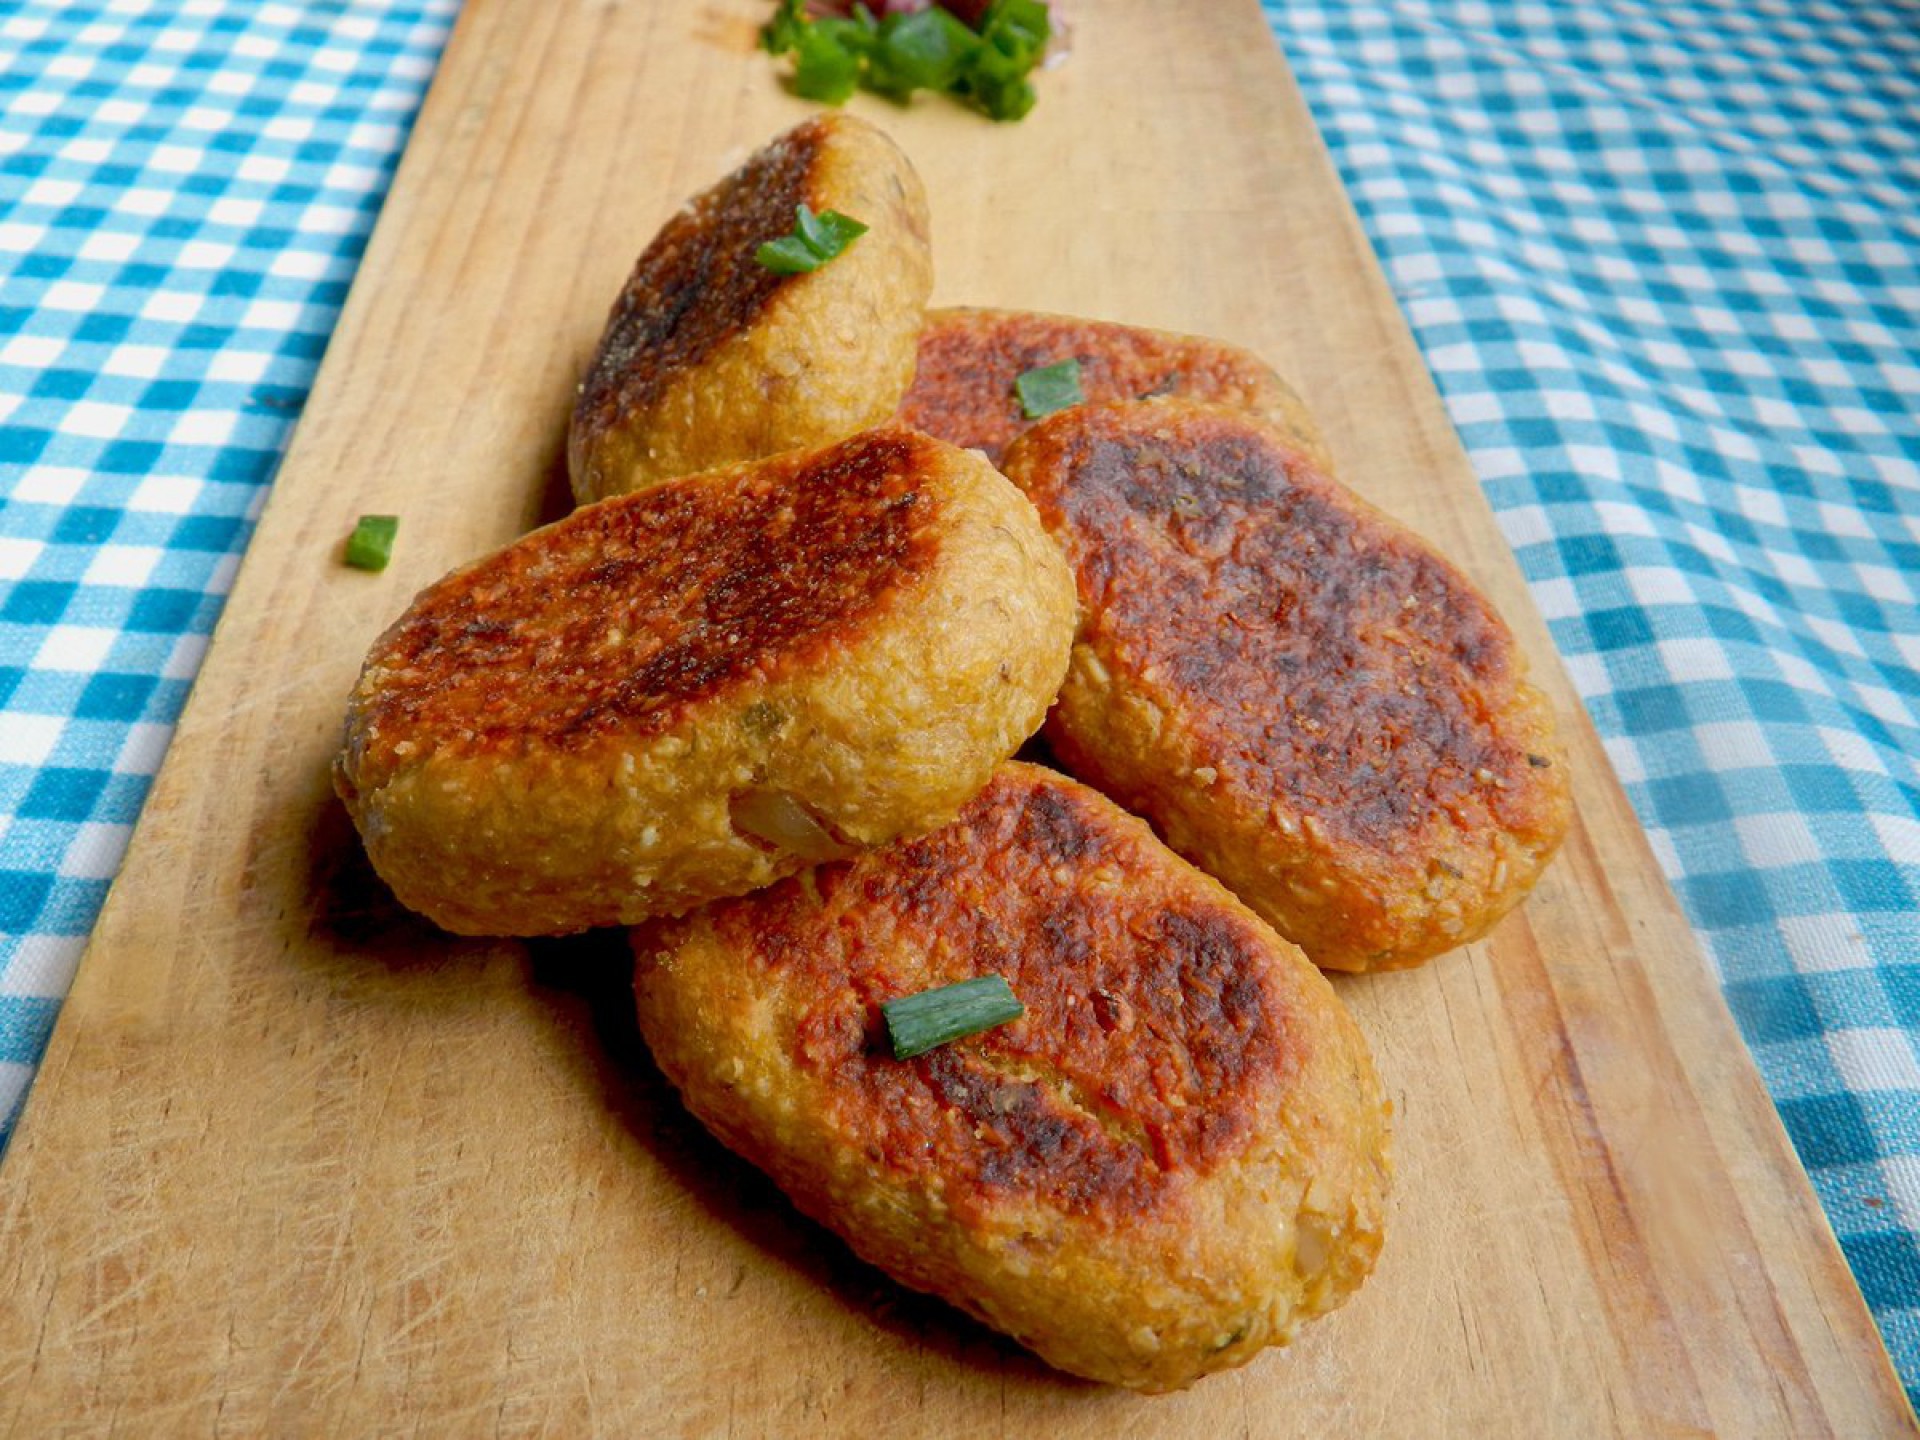 Nuggets veganos podem ser feitos com milho, grão de bico, caju e muitas outras possibilidades  (Foto: divulgação)